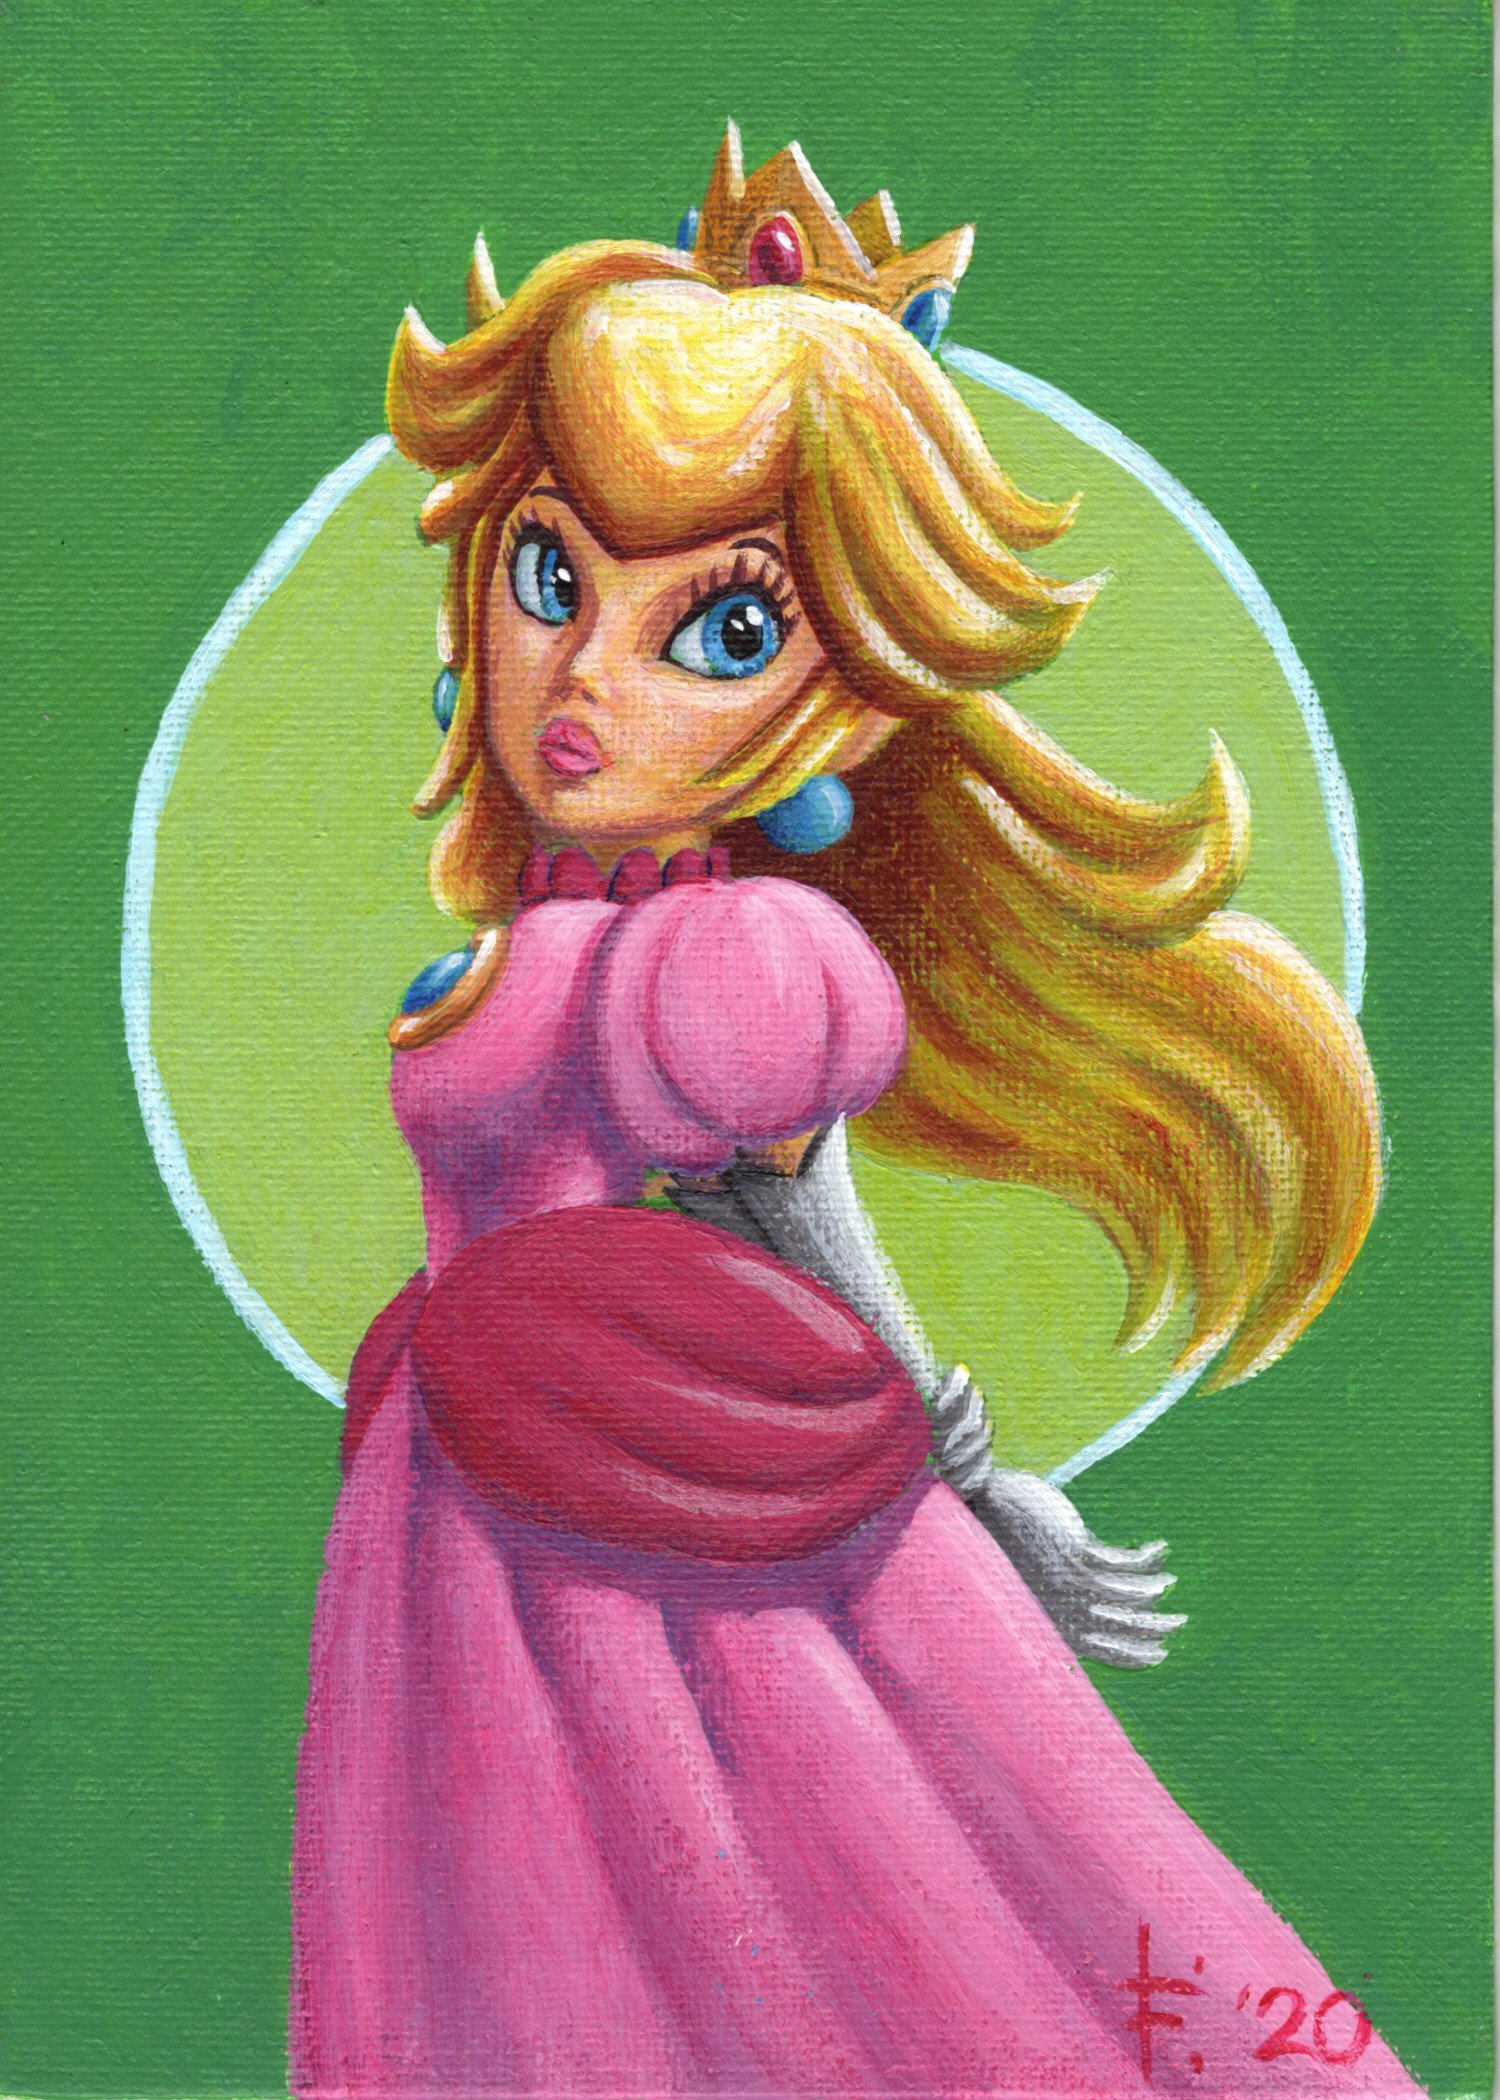 Artwork: Princess Daisy